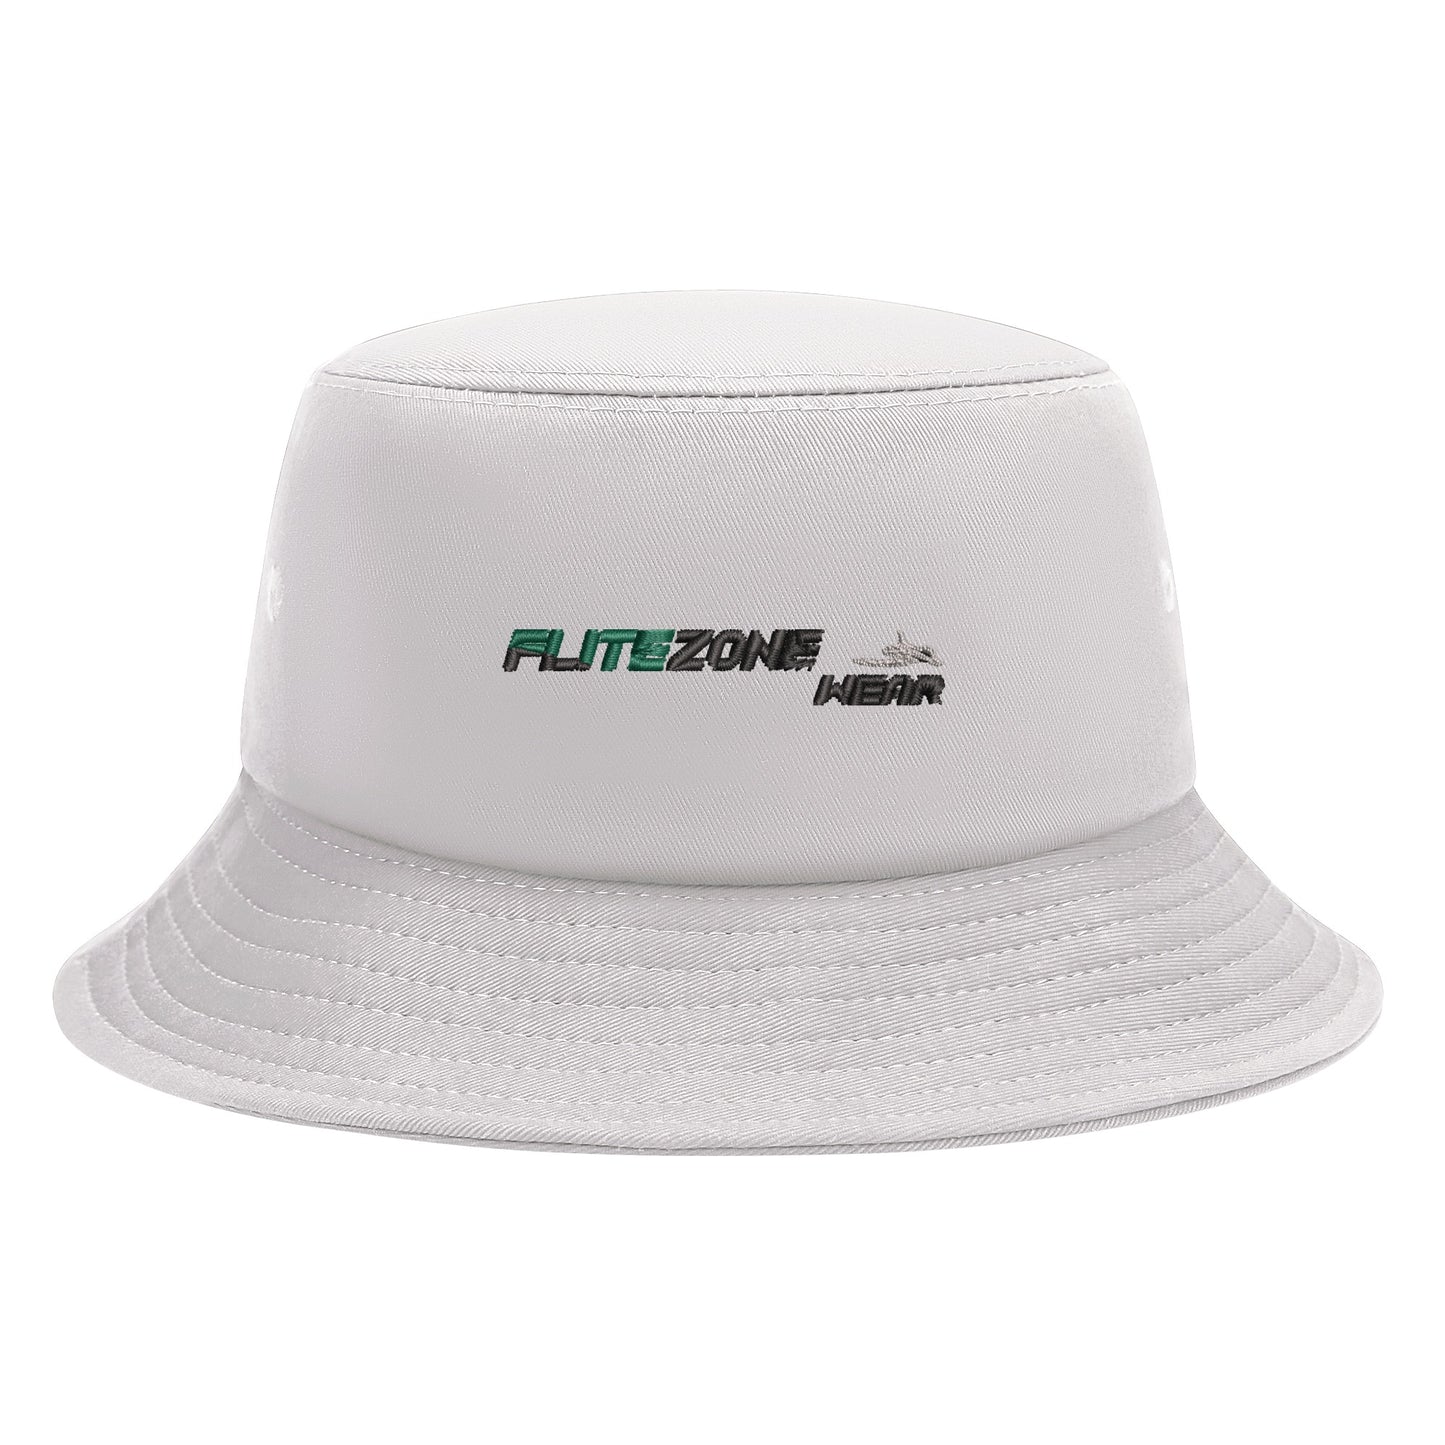 FZ Unisex Bucket Hats